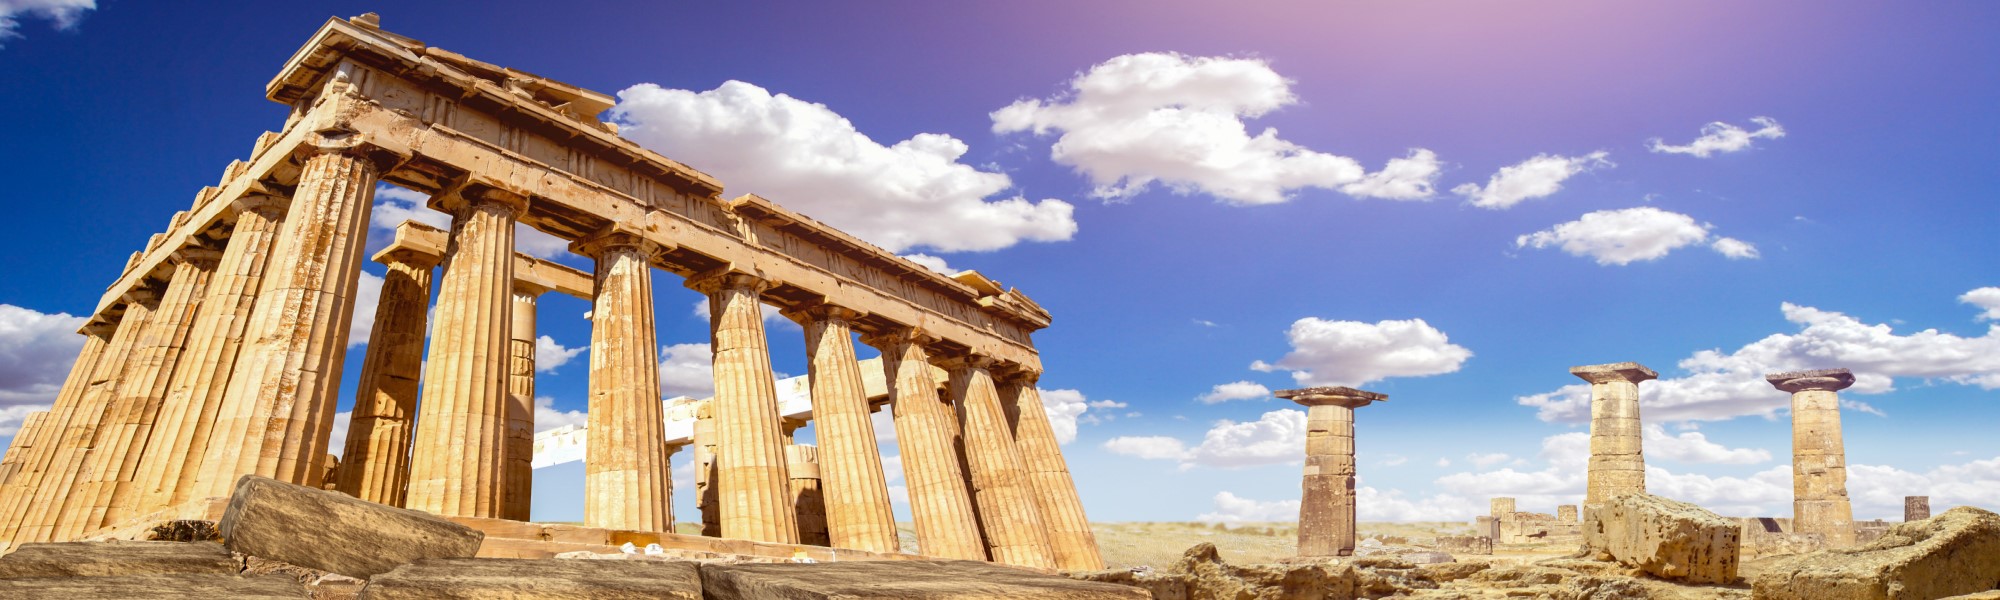 Grecia clásica y Meteora